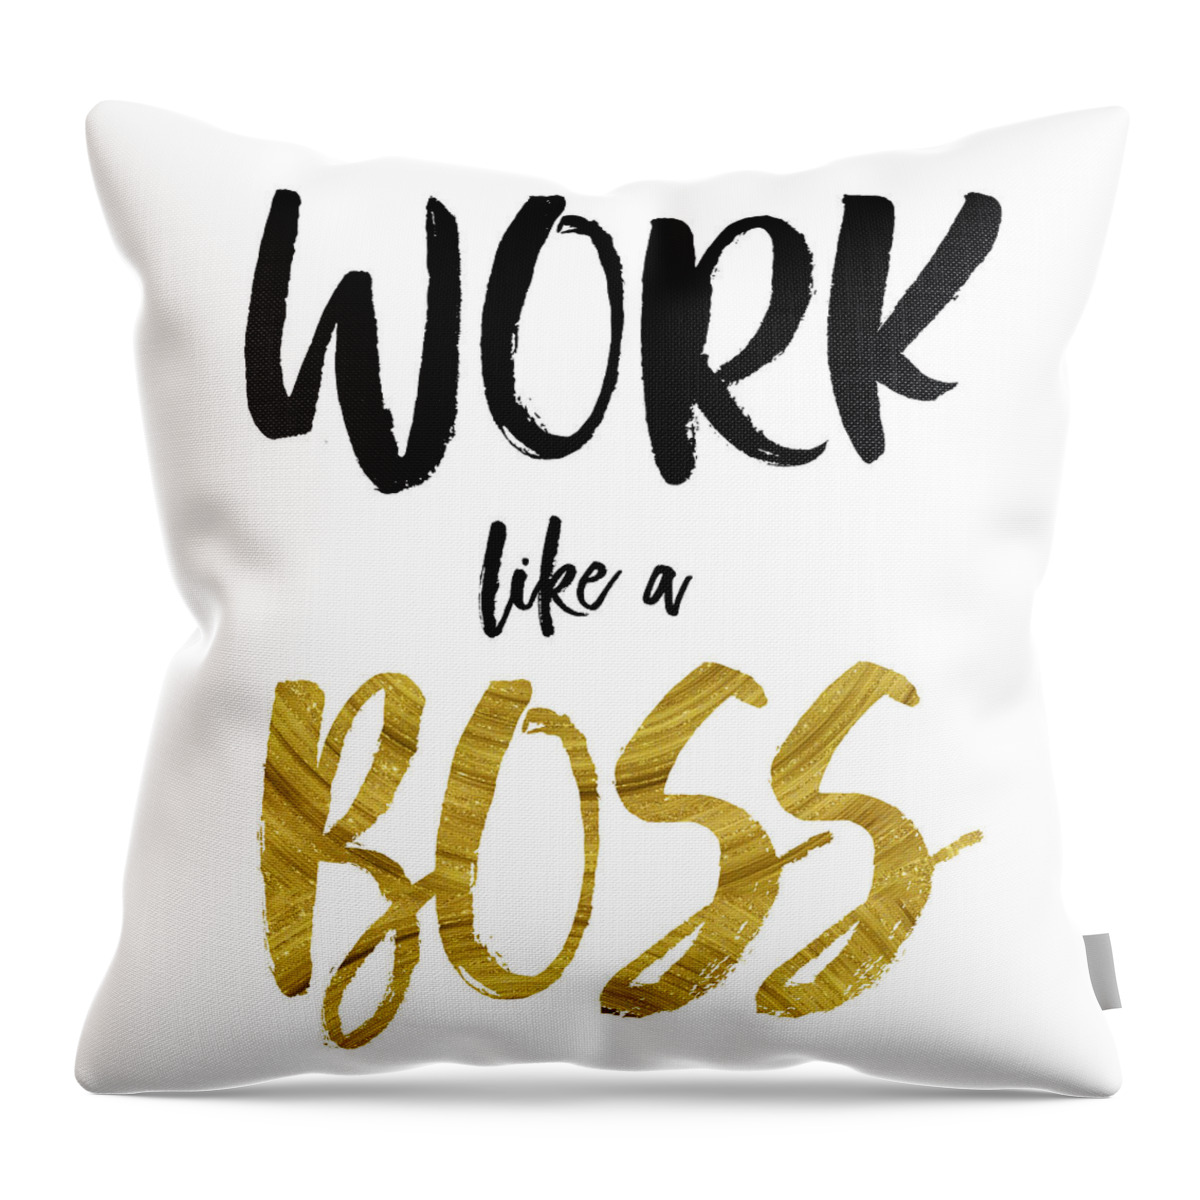 Boss Throw Pillow featuring the digital art Work...Like a Boss by Brandi Fitzgerald